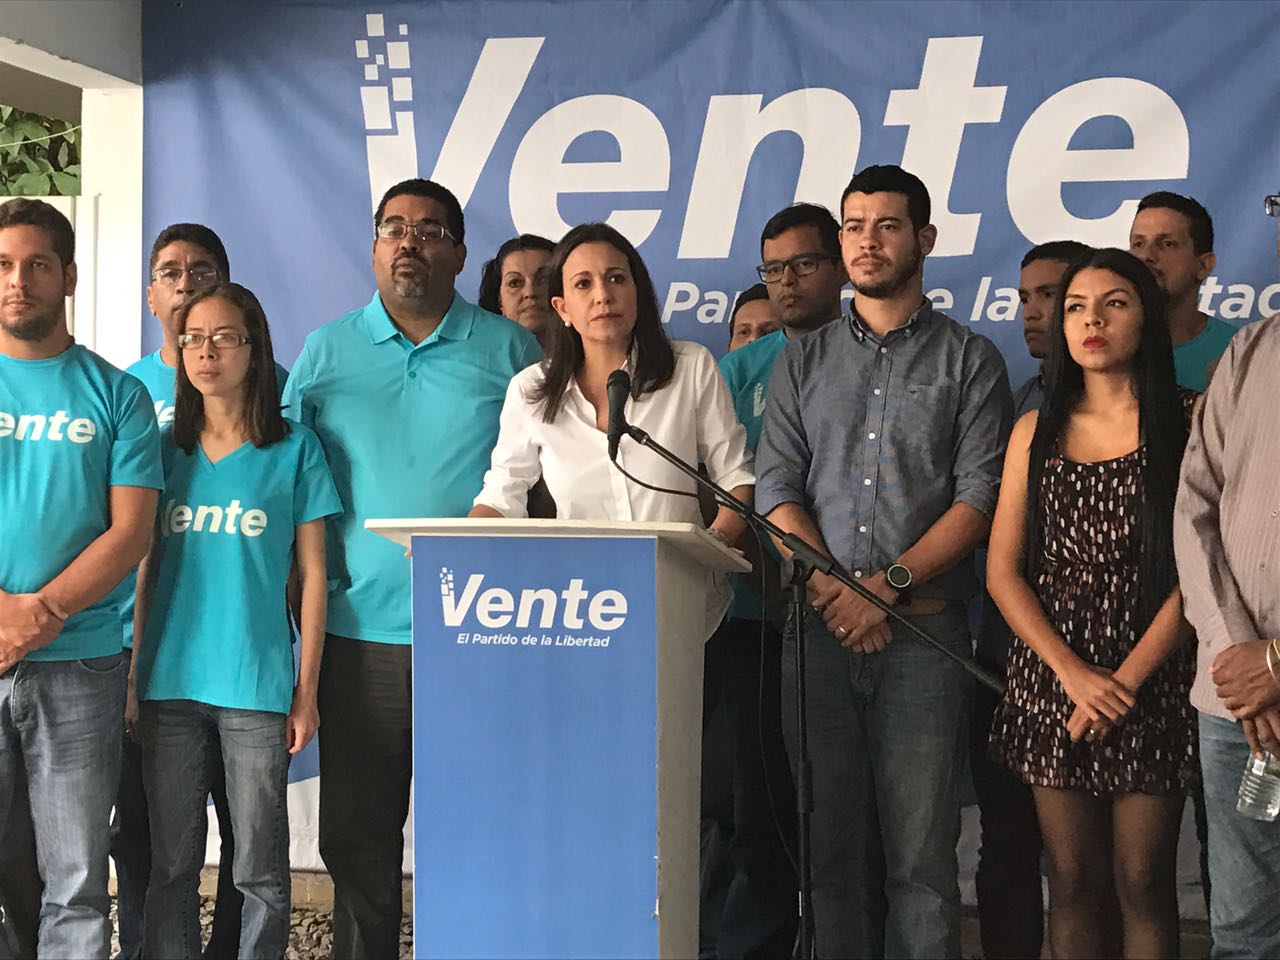 Nos enfocaremos en la propuesta ciudadana de elección popular para renovar el liderazgo, y para ello vamos a trabajar con todos los venezolanos y organizaciones políticas y civiles»